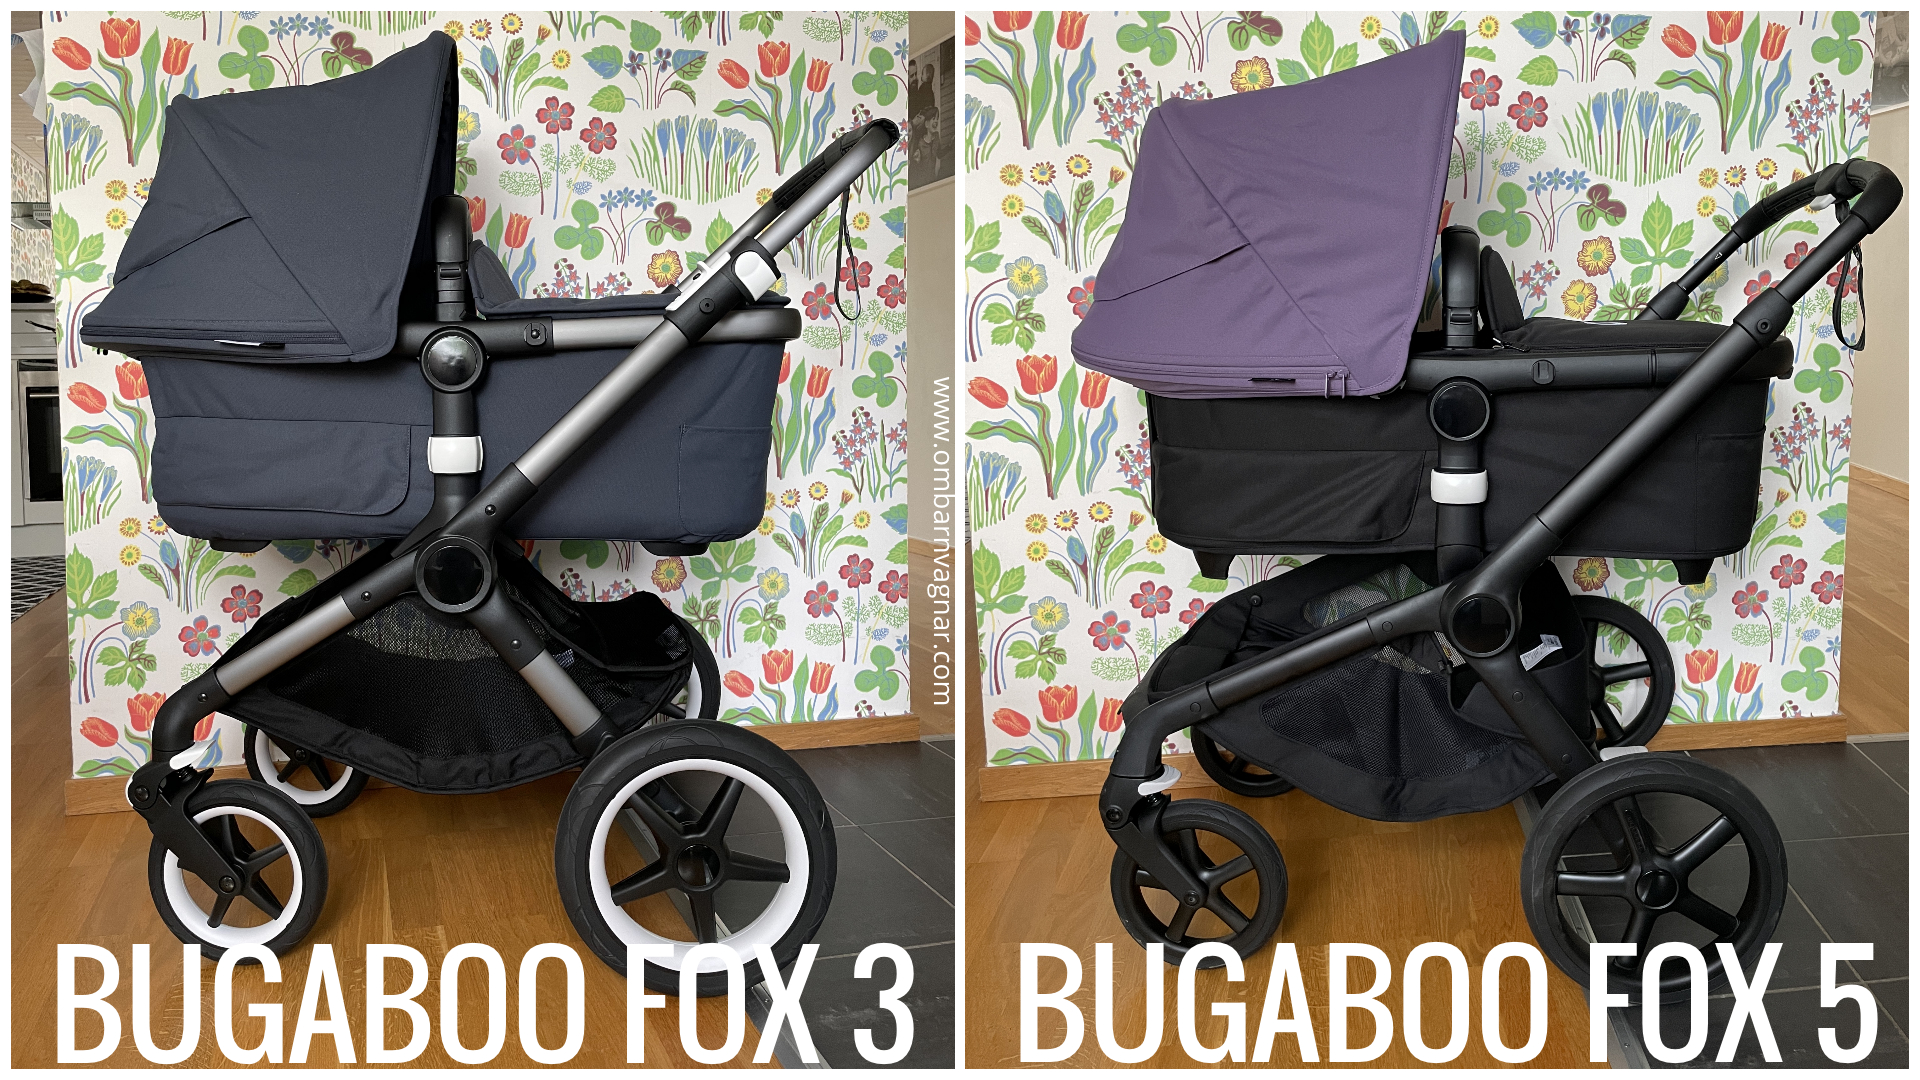 Skillnaden mellan Bugaboo Fox 3 och Bugaboo Fox 5